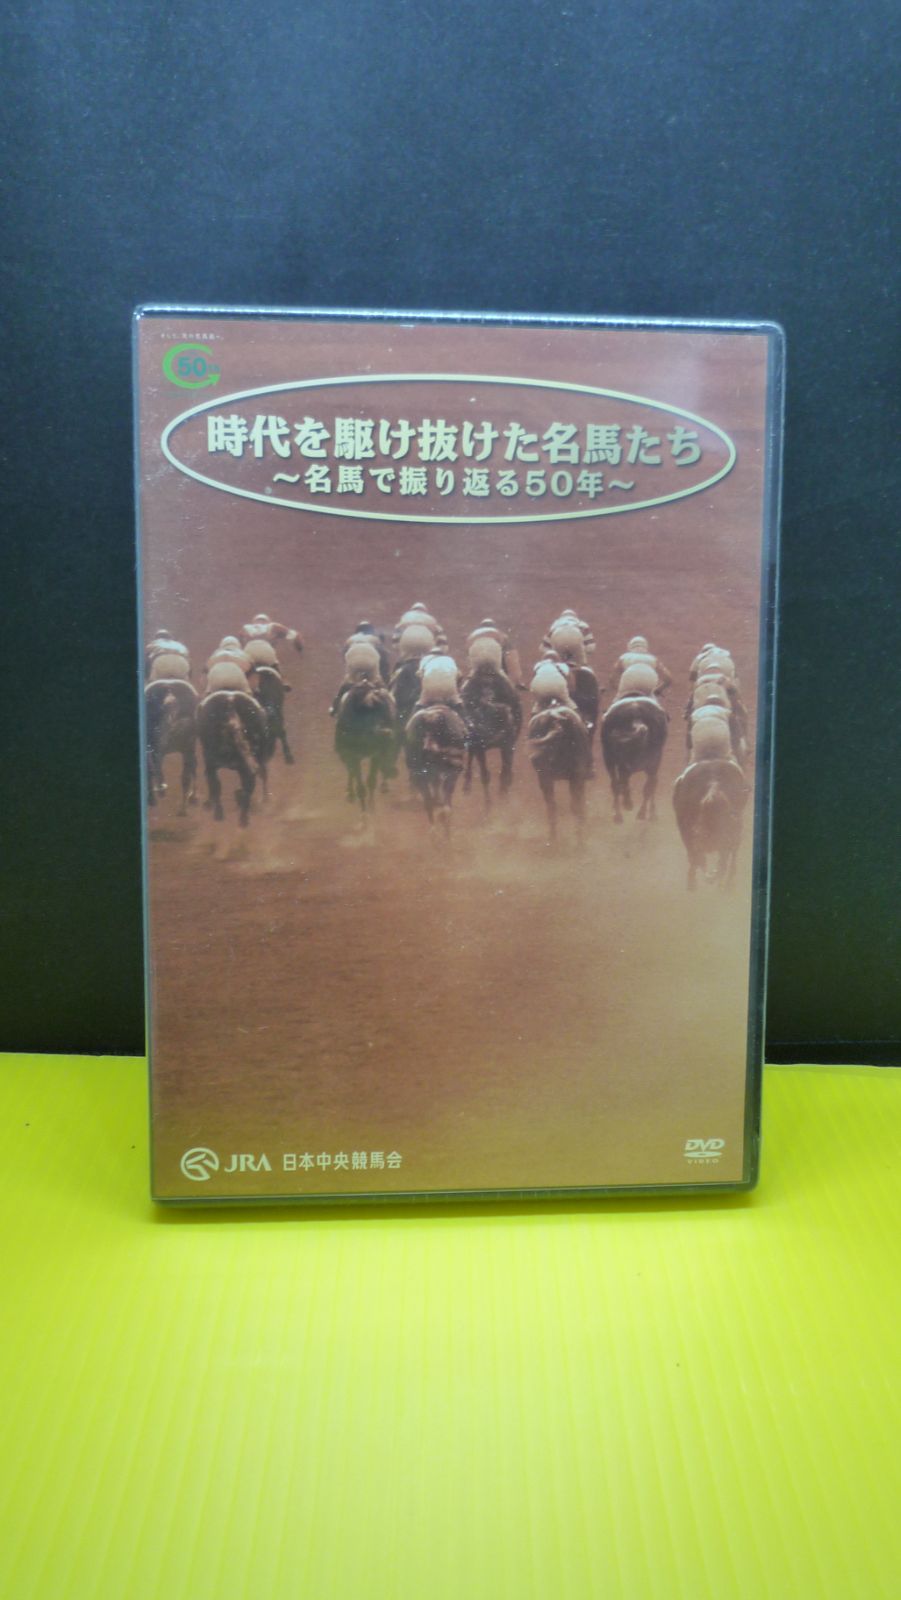 時代を駆け抜けた名馬たち DVD JRA - ブルーレイ